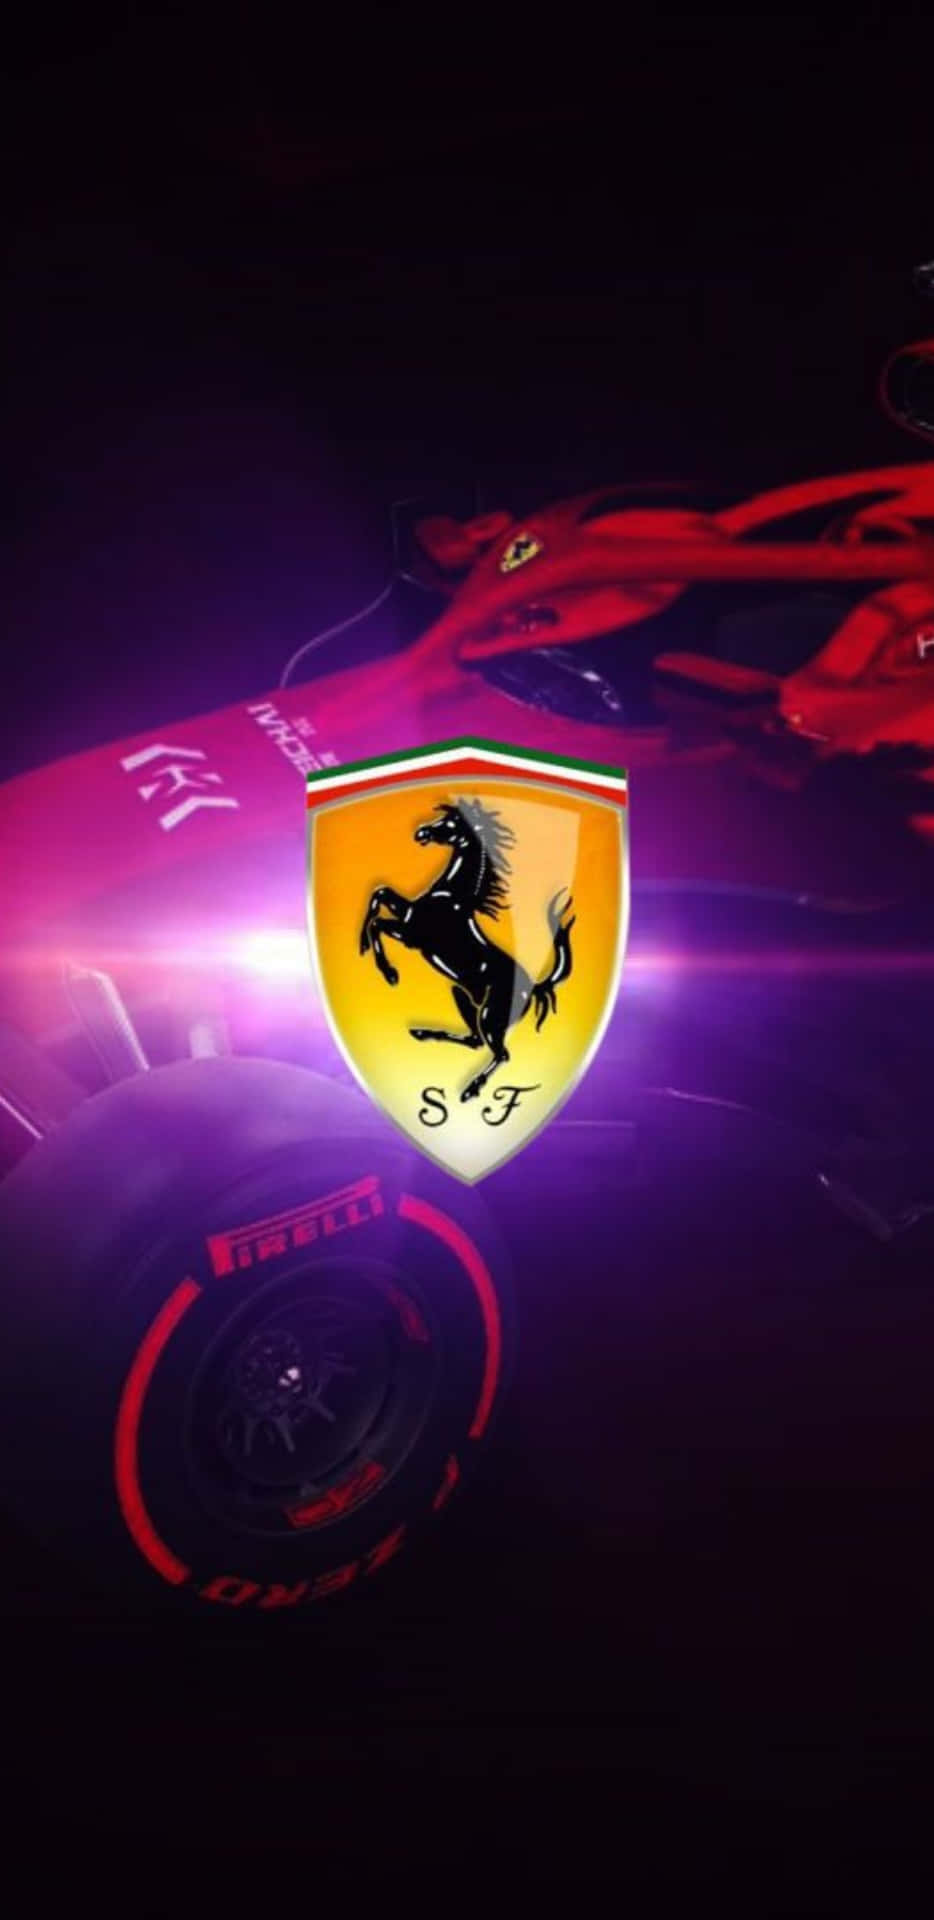 Ferrari F1 Wallpapers Hd